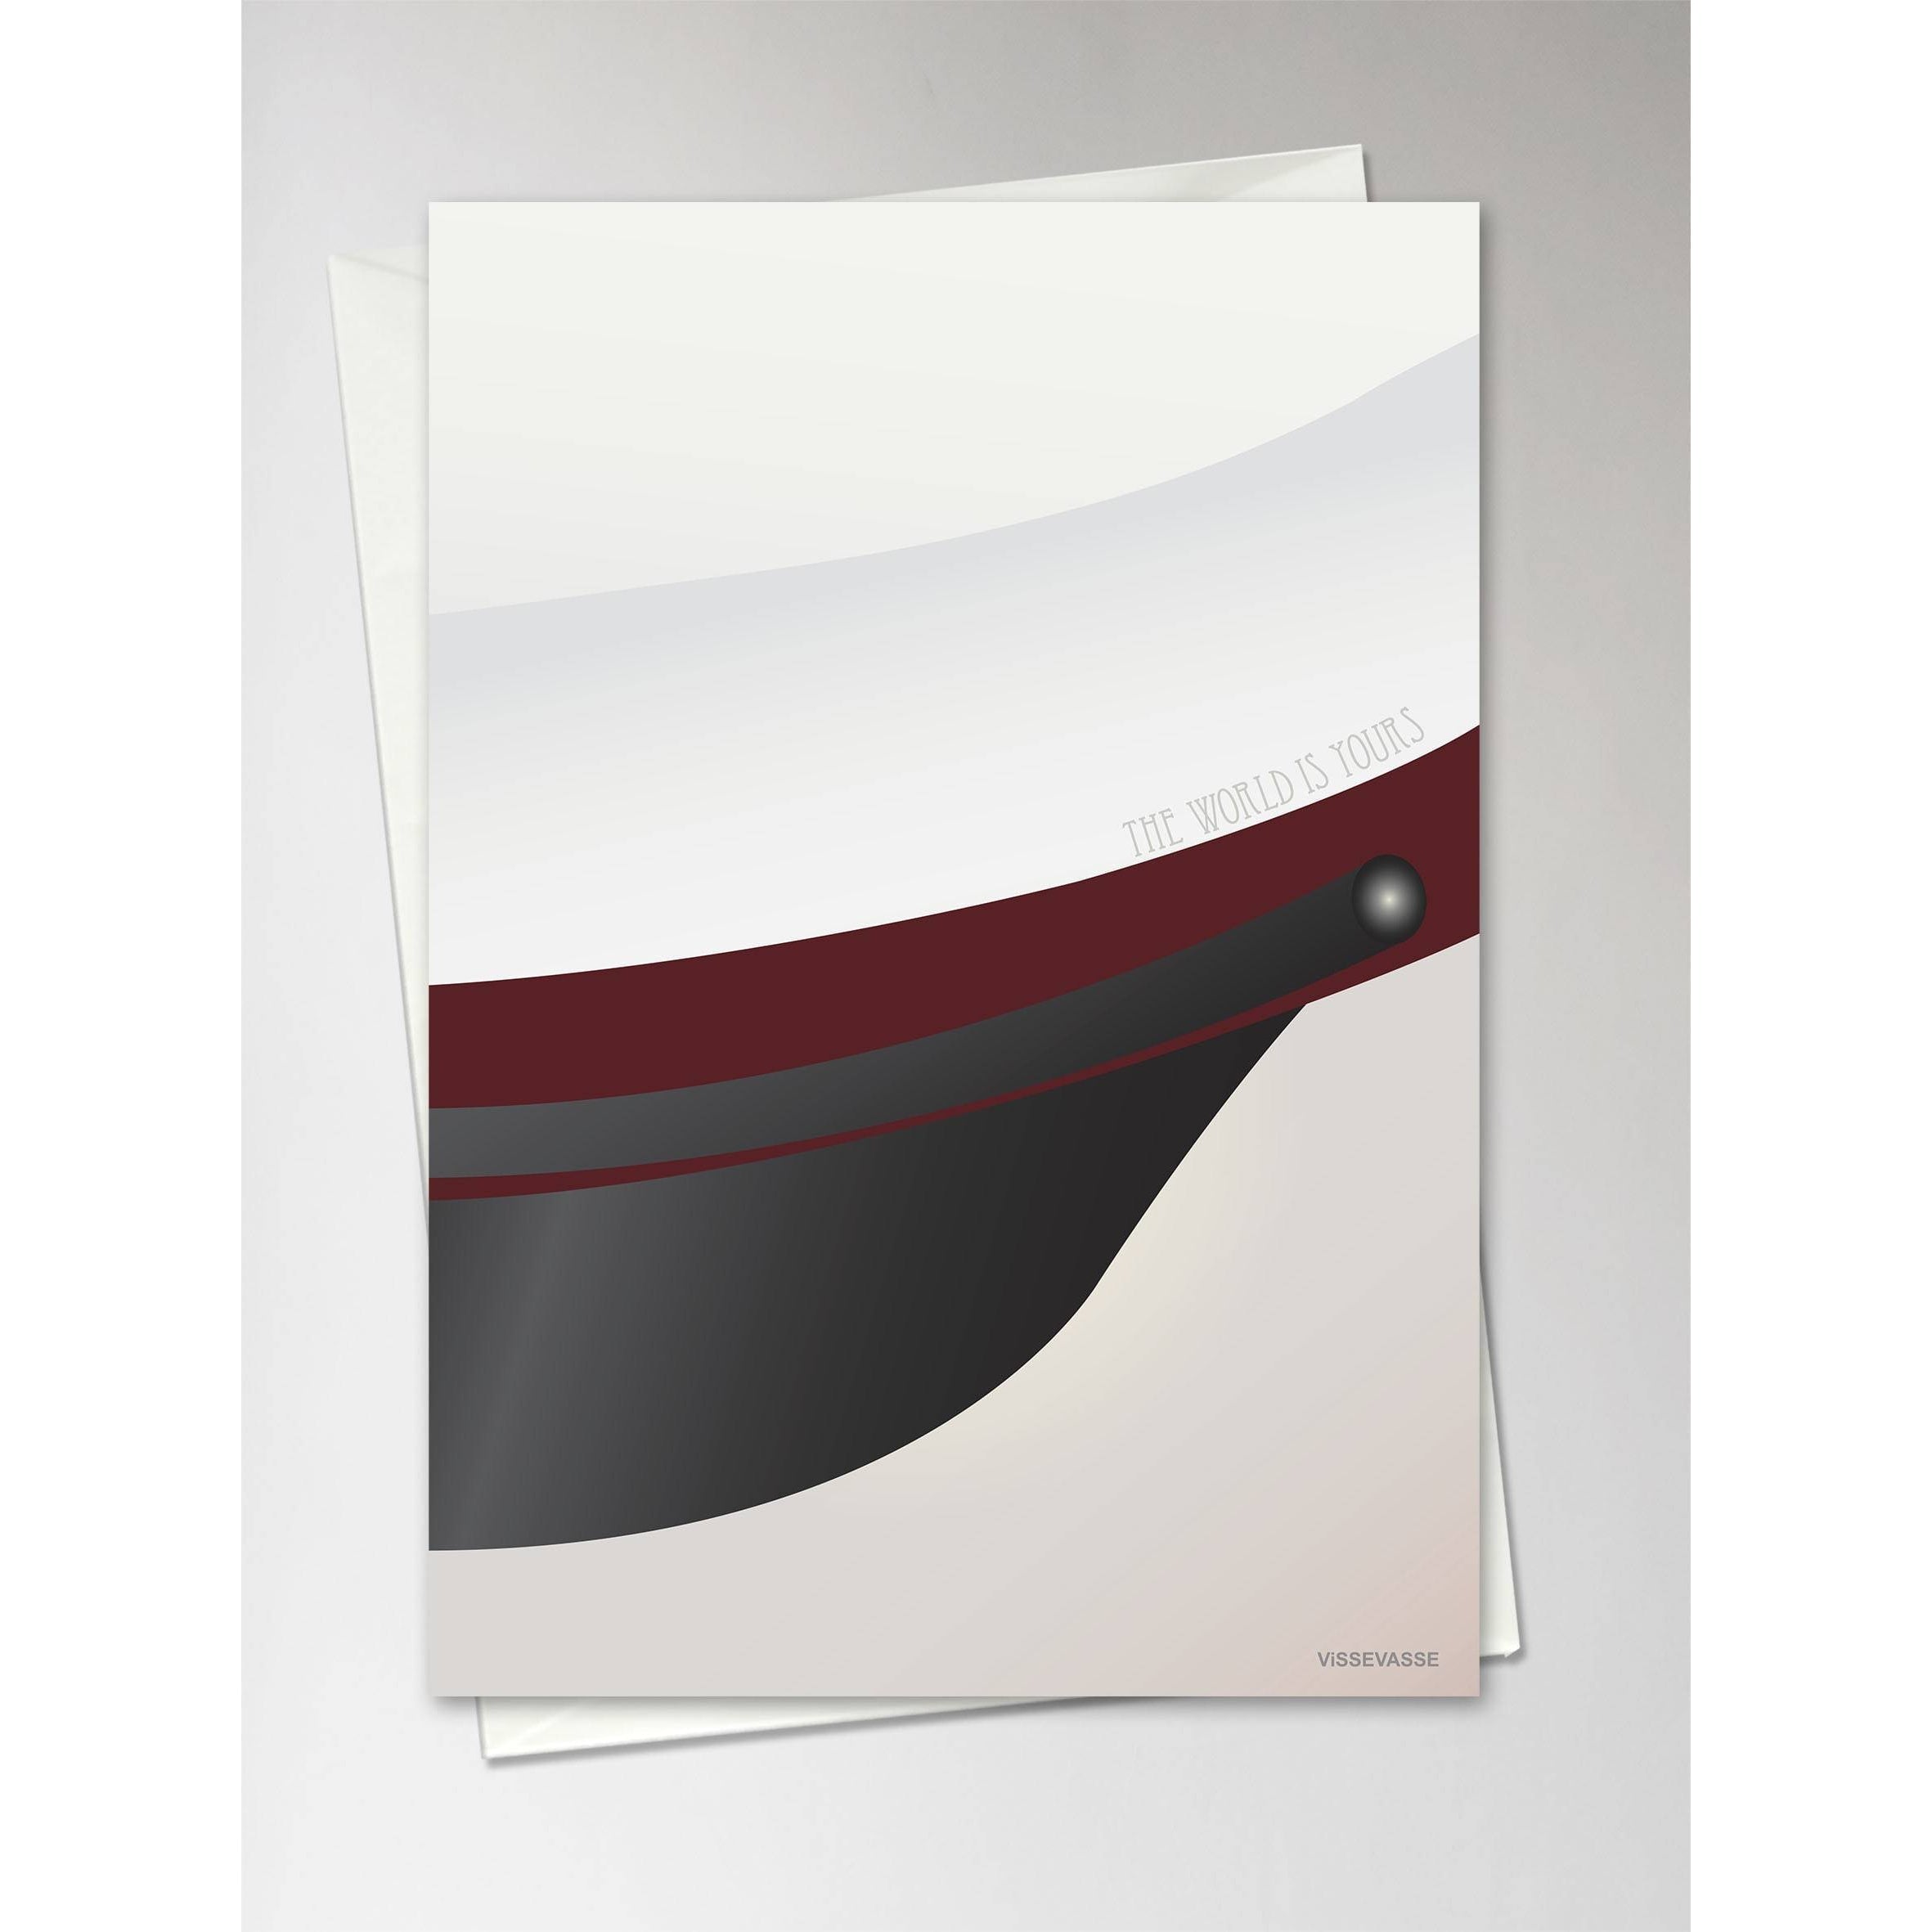 Vissevasse Student Hat gratulasjonskort 10,5 x15 cm, rød